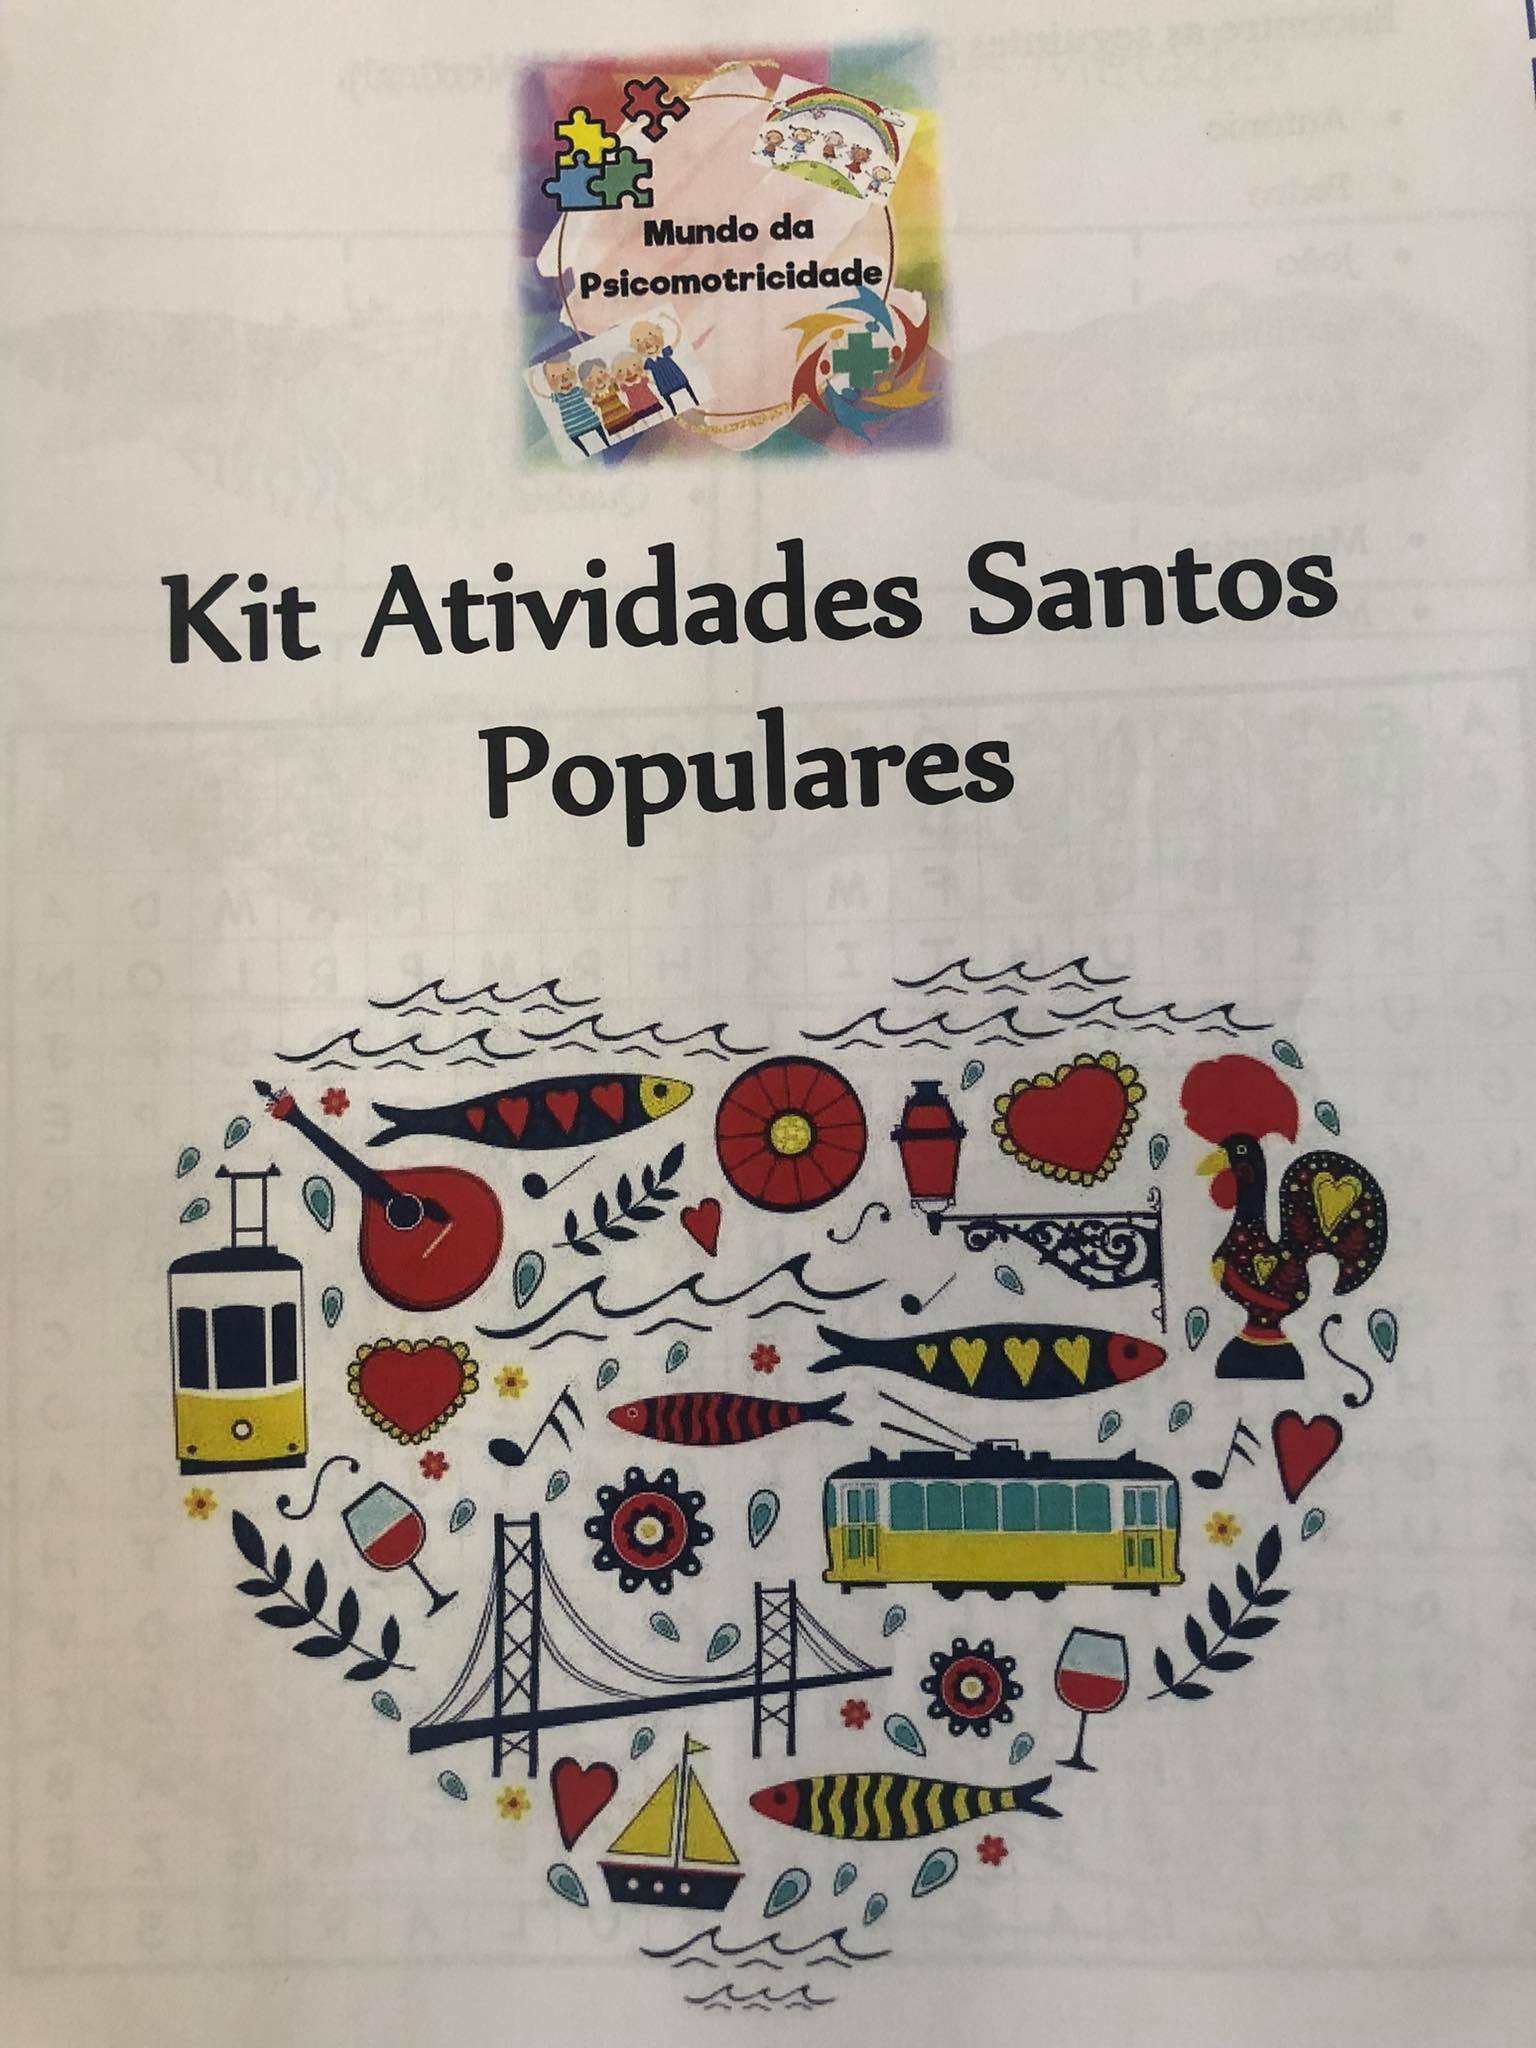 Notícias - Kit de atividades dos Santos Populares